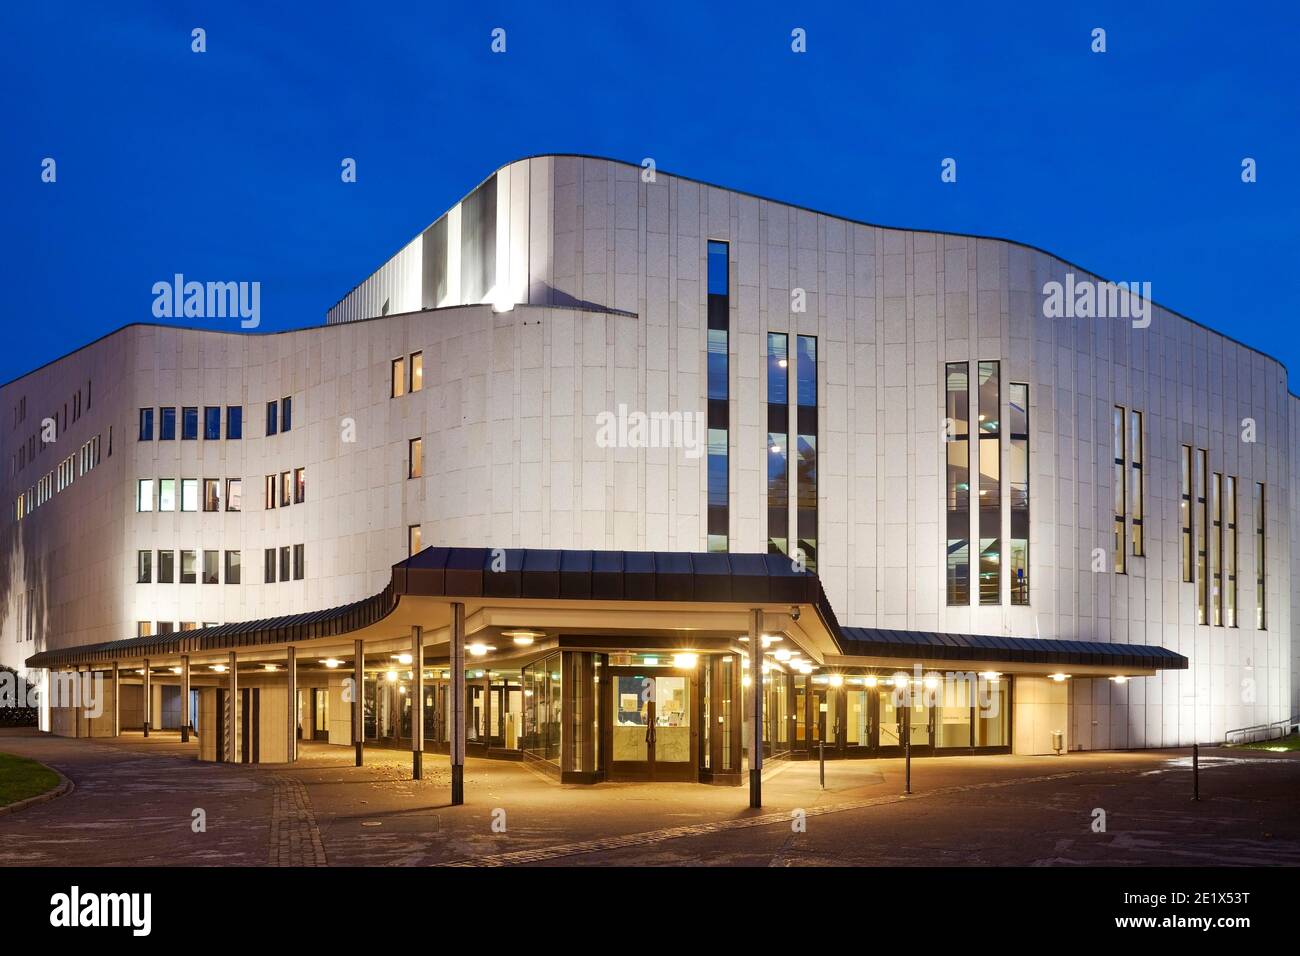 Aalto Theater am Abend, Essen, région de la Ruhr, Rhénanie-du-Nord-Westphalie, Allemagne Banque D'Images